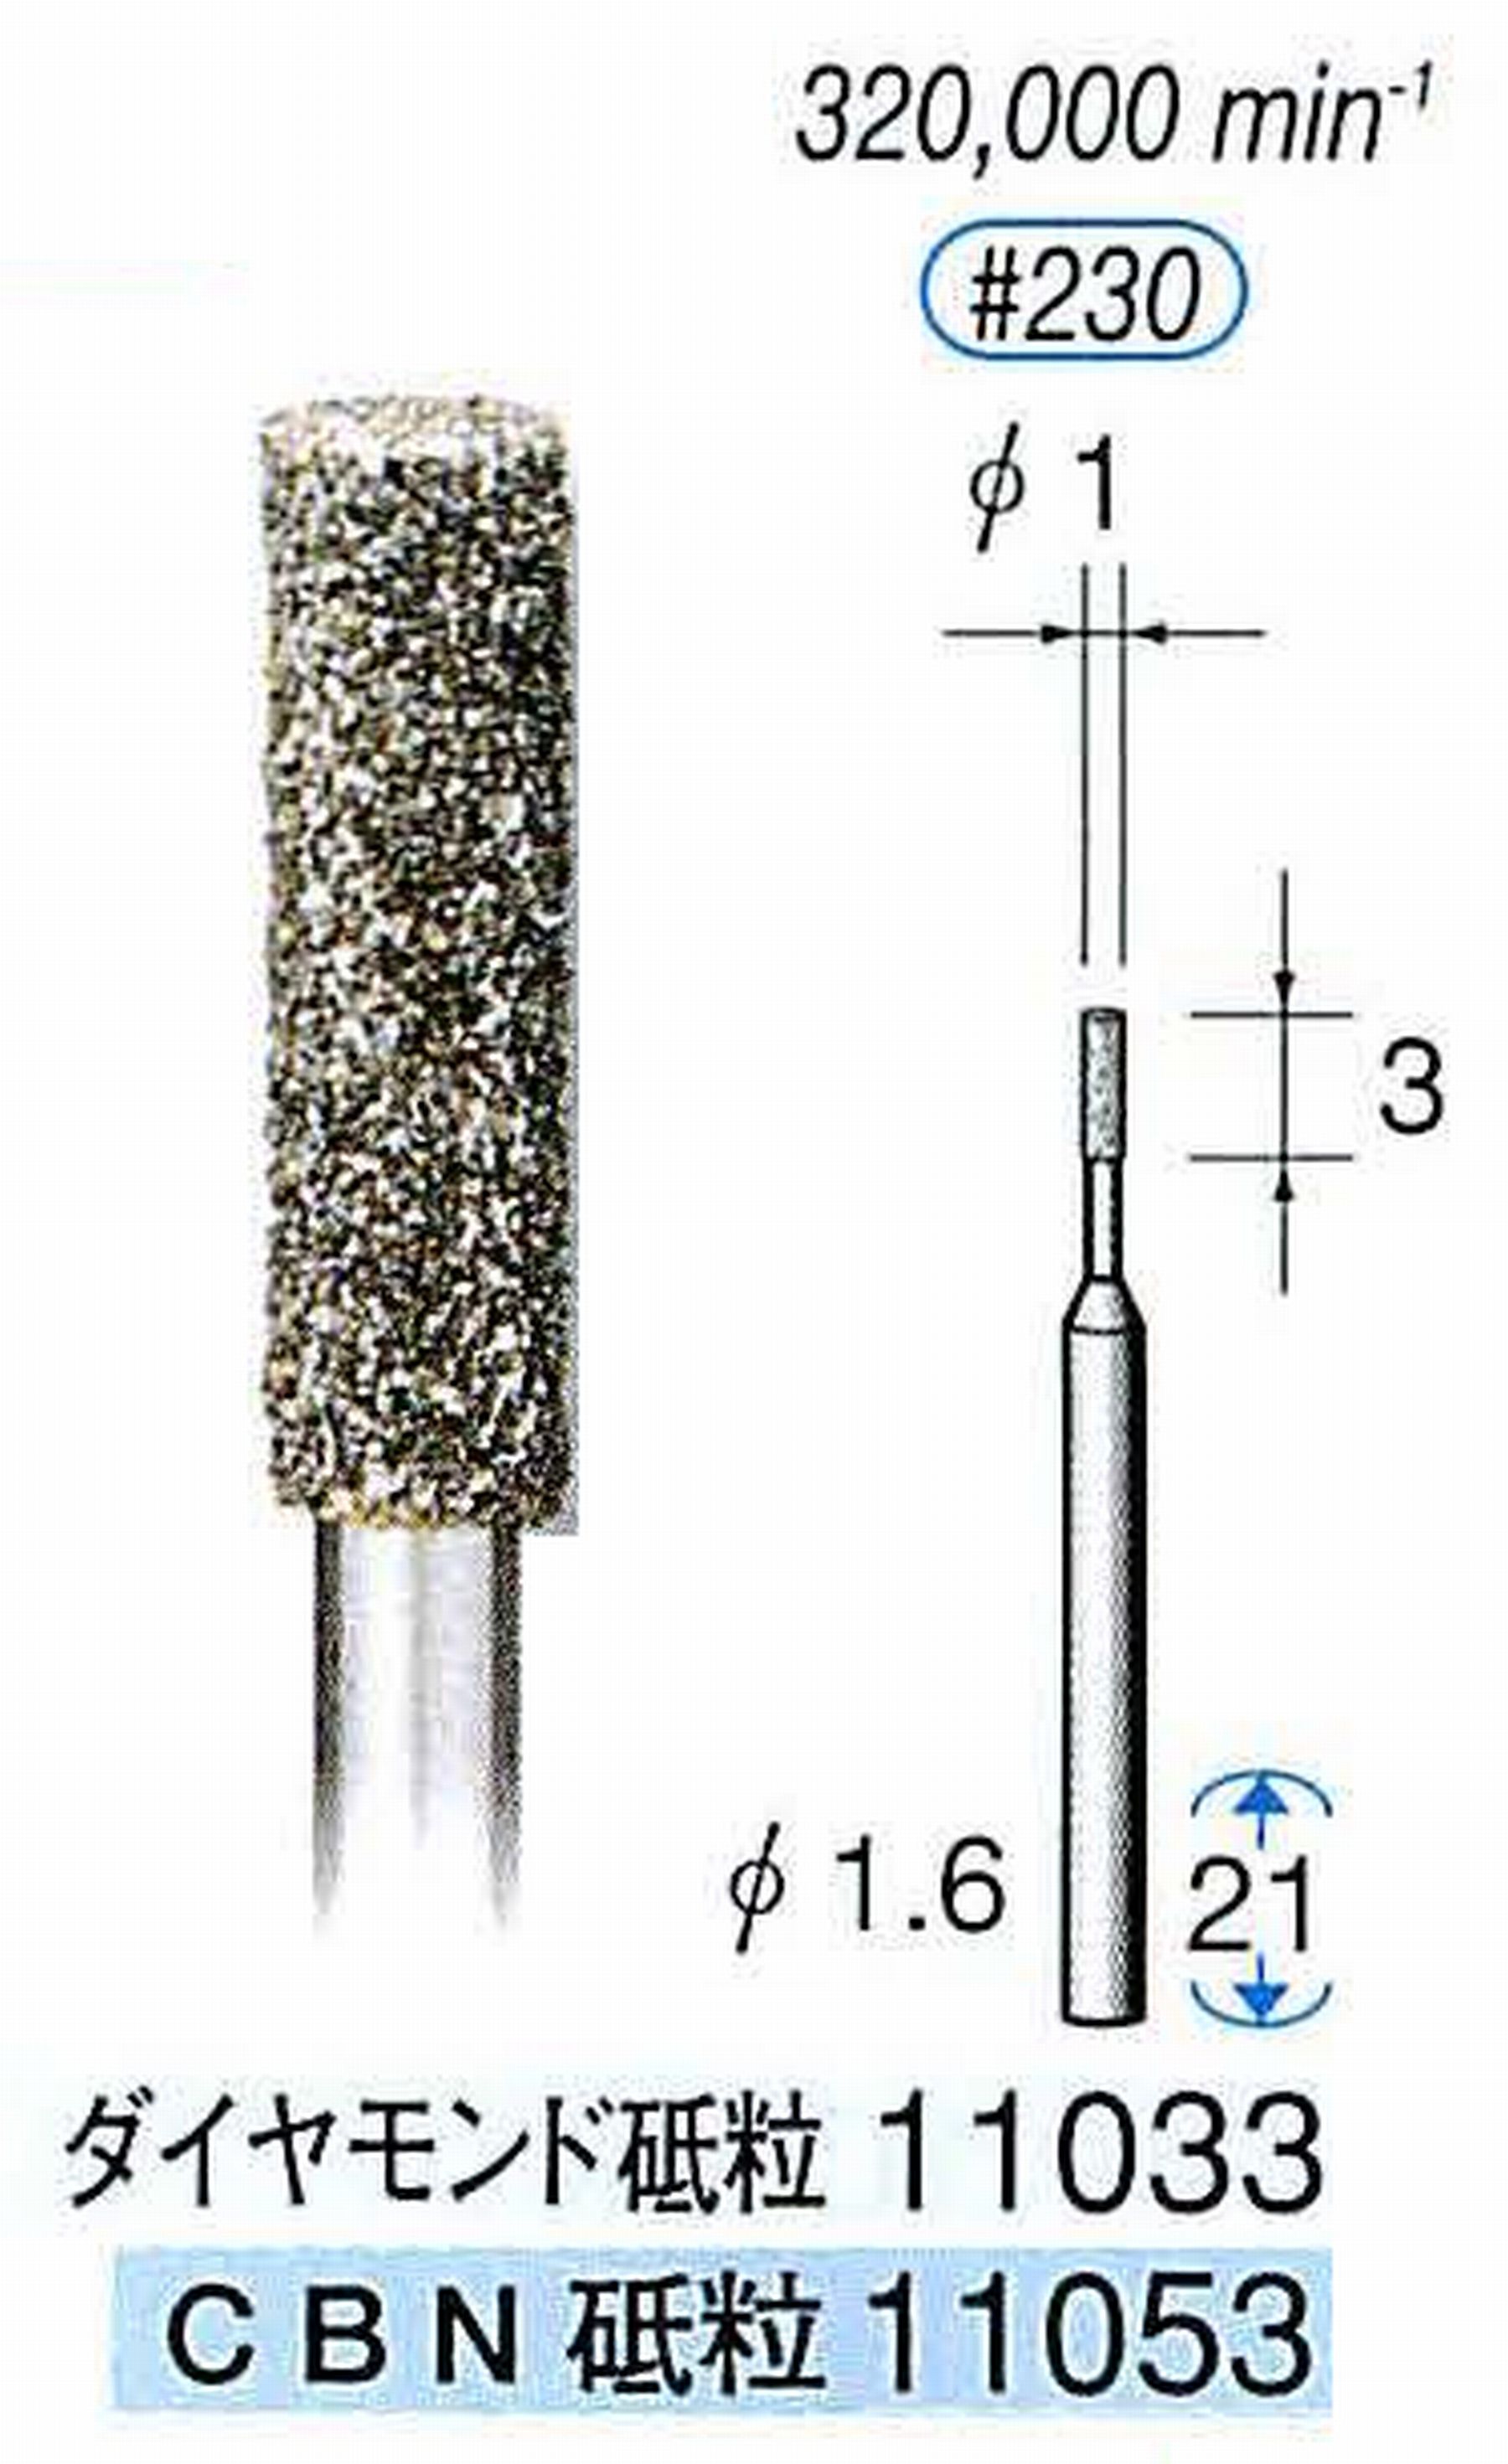 ナカニシ/NAKANISHI 電着ダイヤモンドバー(ミニチュアタイプ)ダイヤモンド砥粒 軸径(シャンク)φ1.6mm 11033